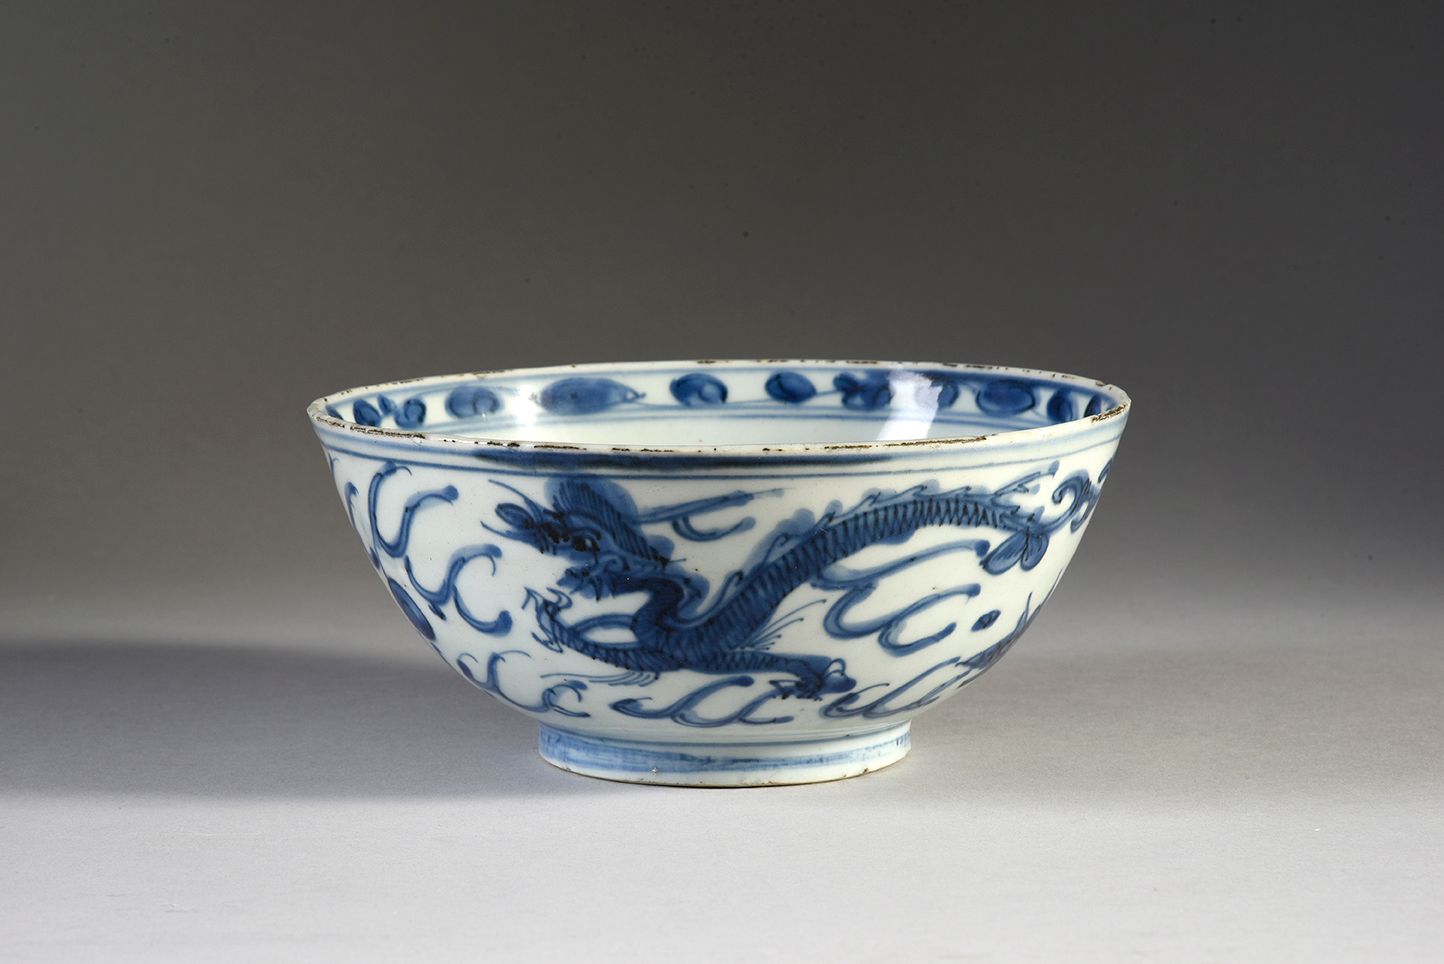 CHINE - XVIIe siècle 瓷碗，釉里红装饰有凤凰、莲花和波浪，内部装饰有鹿的纹章和叶子的楣。(唇部有缺口，底面有烧制裂纹)
D.17.5厘米